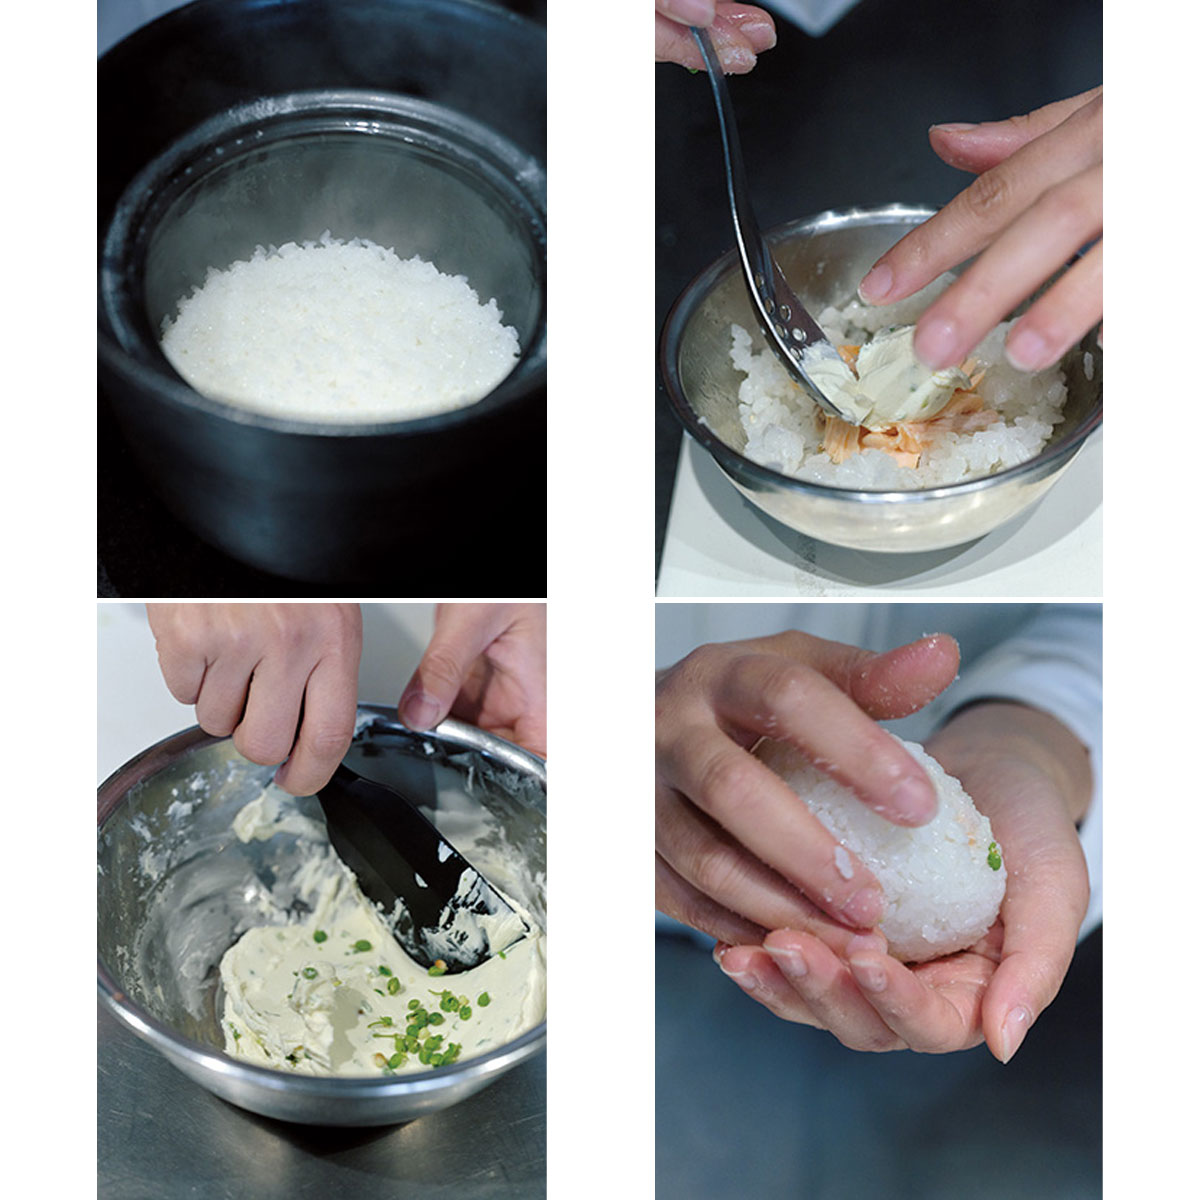 ピカピカに炊けたご飯を100gとり、軽くほぐしたサーモンと、山椒を加えたチーズをのせて、軽く握る。塩と山椒を手にのせて再度握り、片面にも塩をふる。